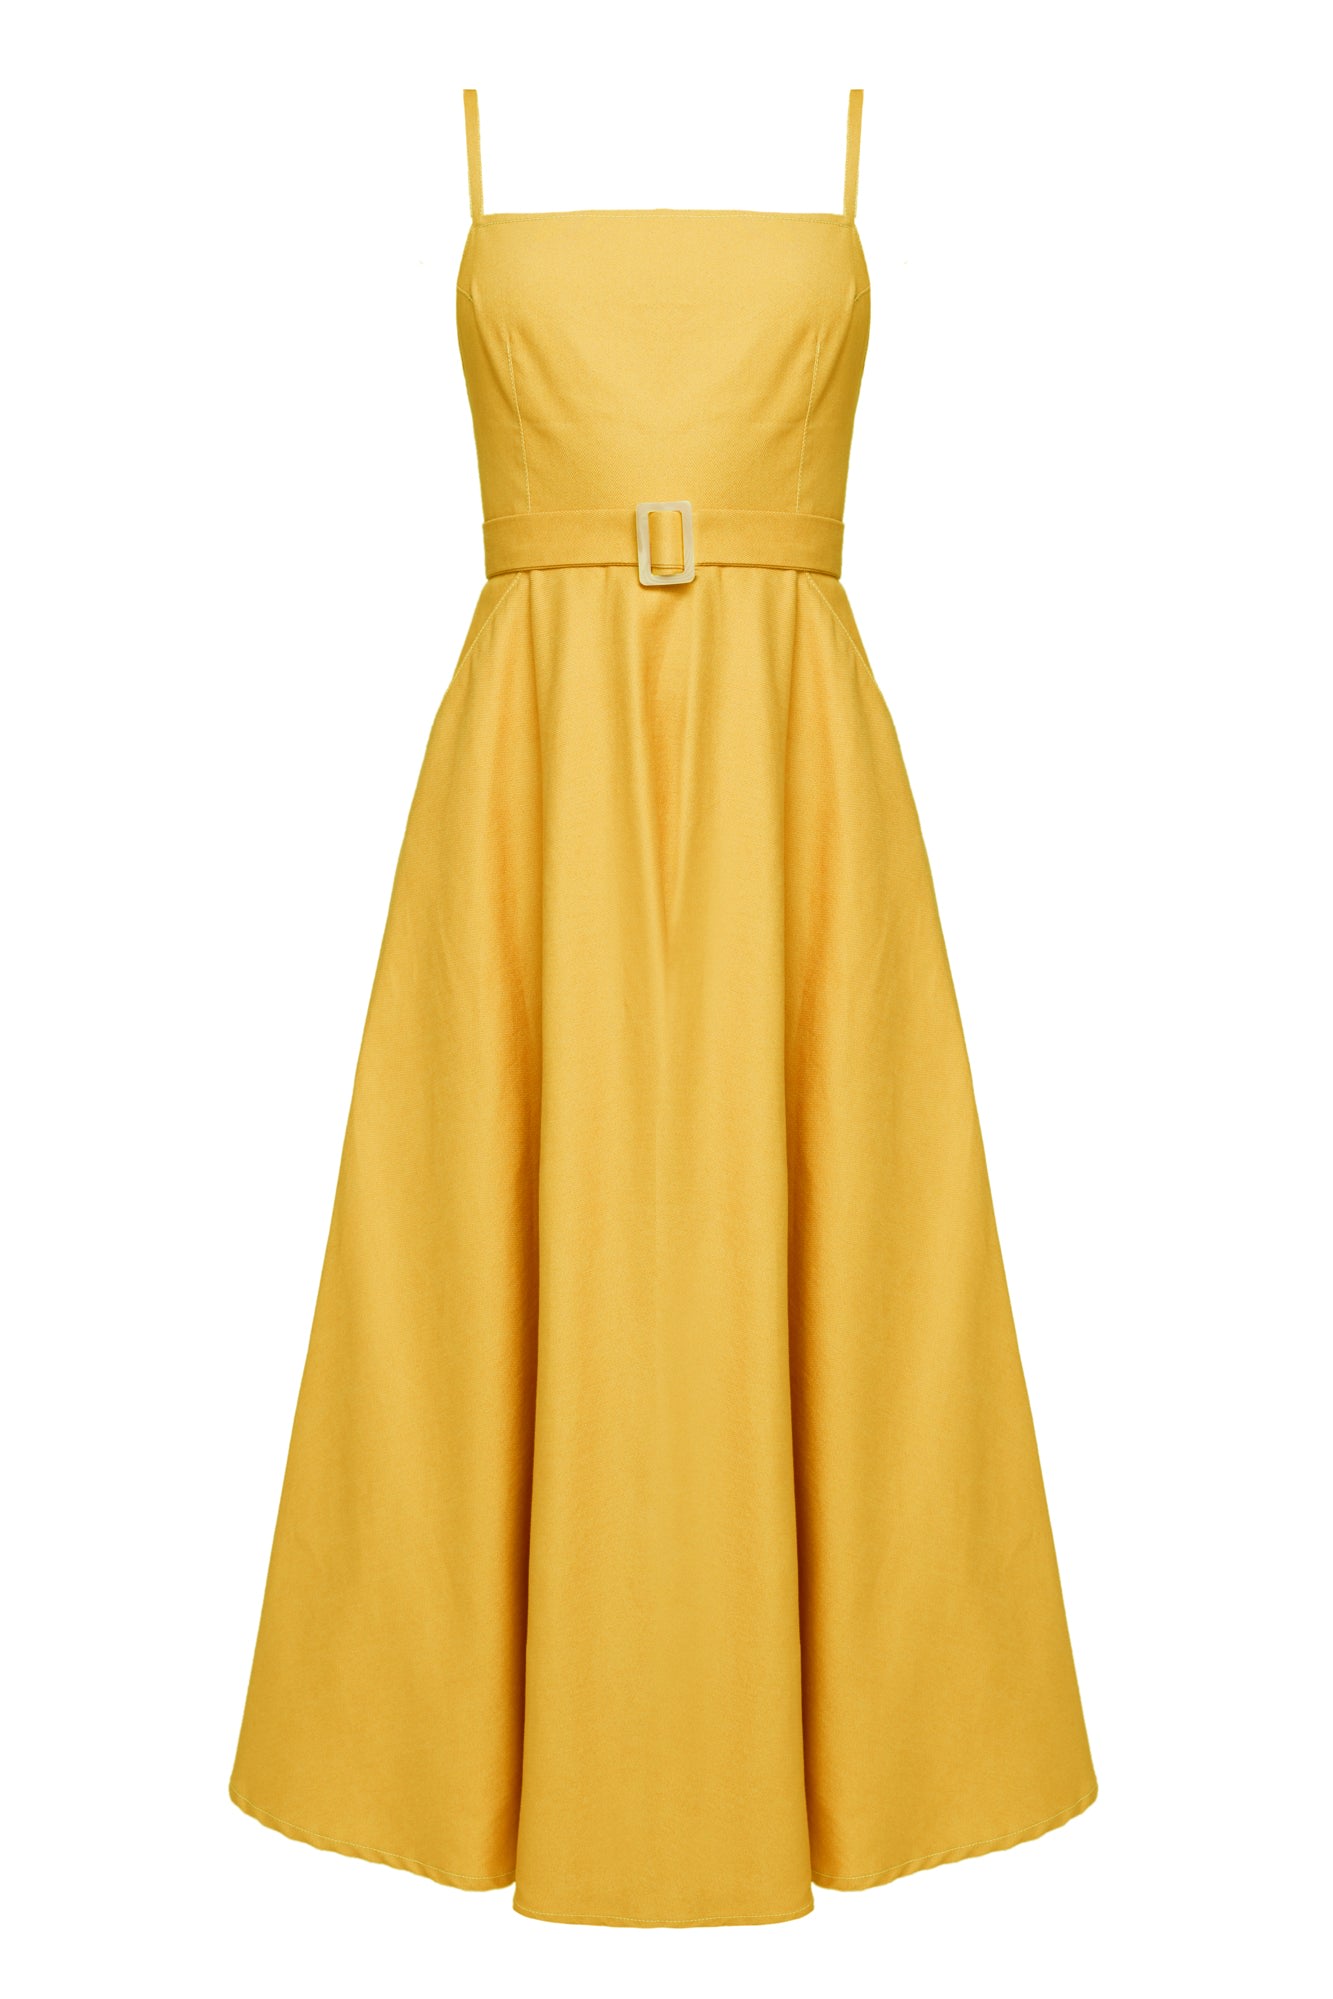 Undress Women's Yellow / Orange Matissa Yellow Denim Circle Skirt Midi Dress